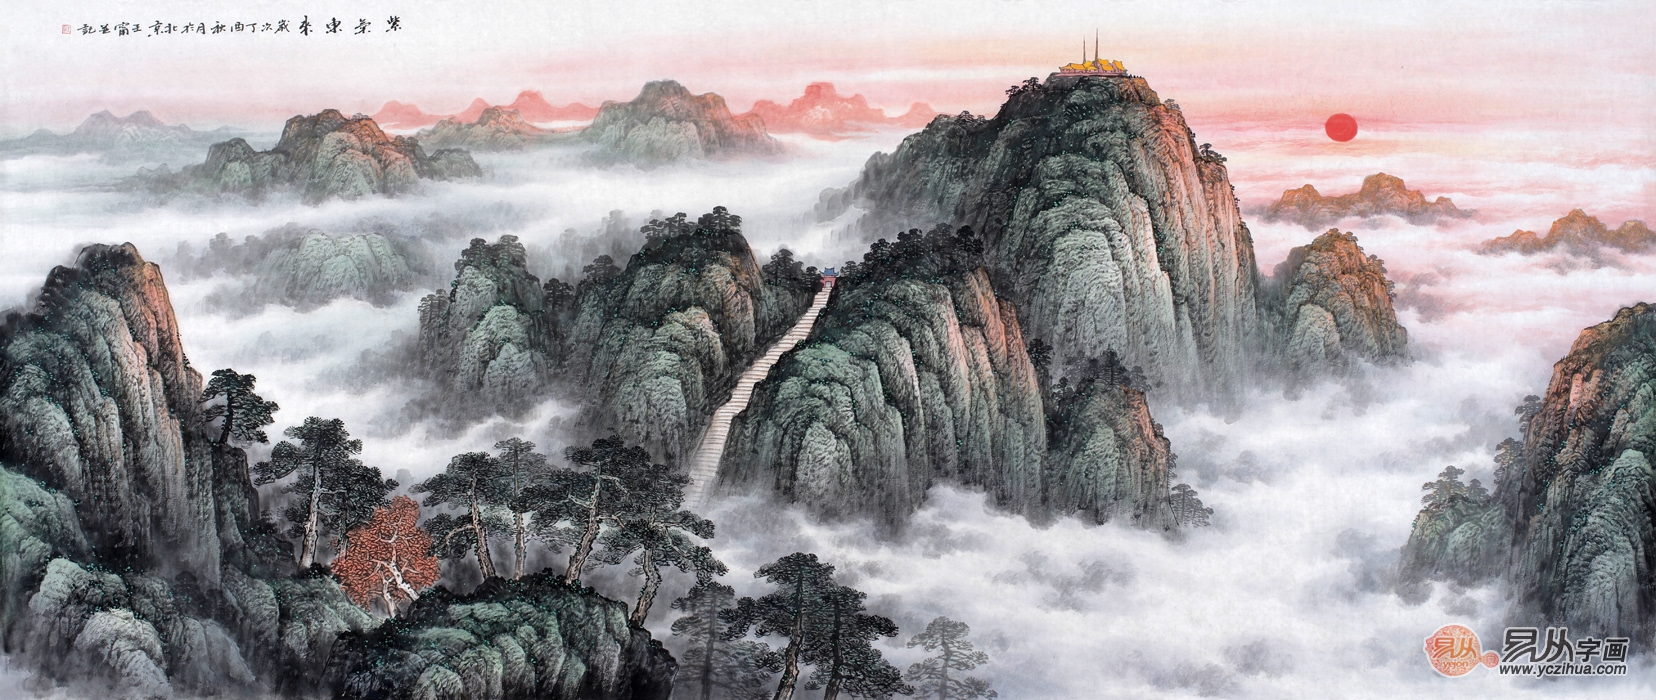 五岳之首 王宁最新力作八尺横幅泰山国画《紫气东来》作品来源:易从网